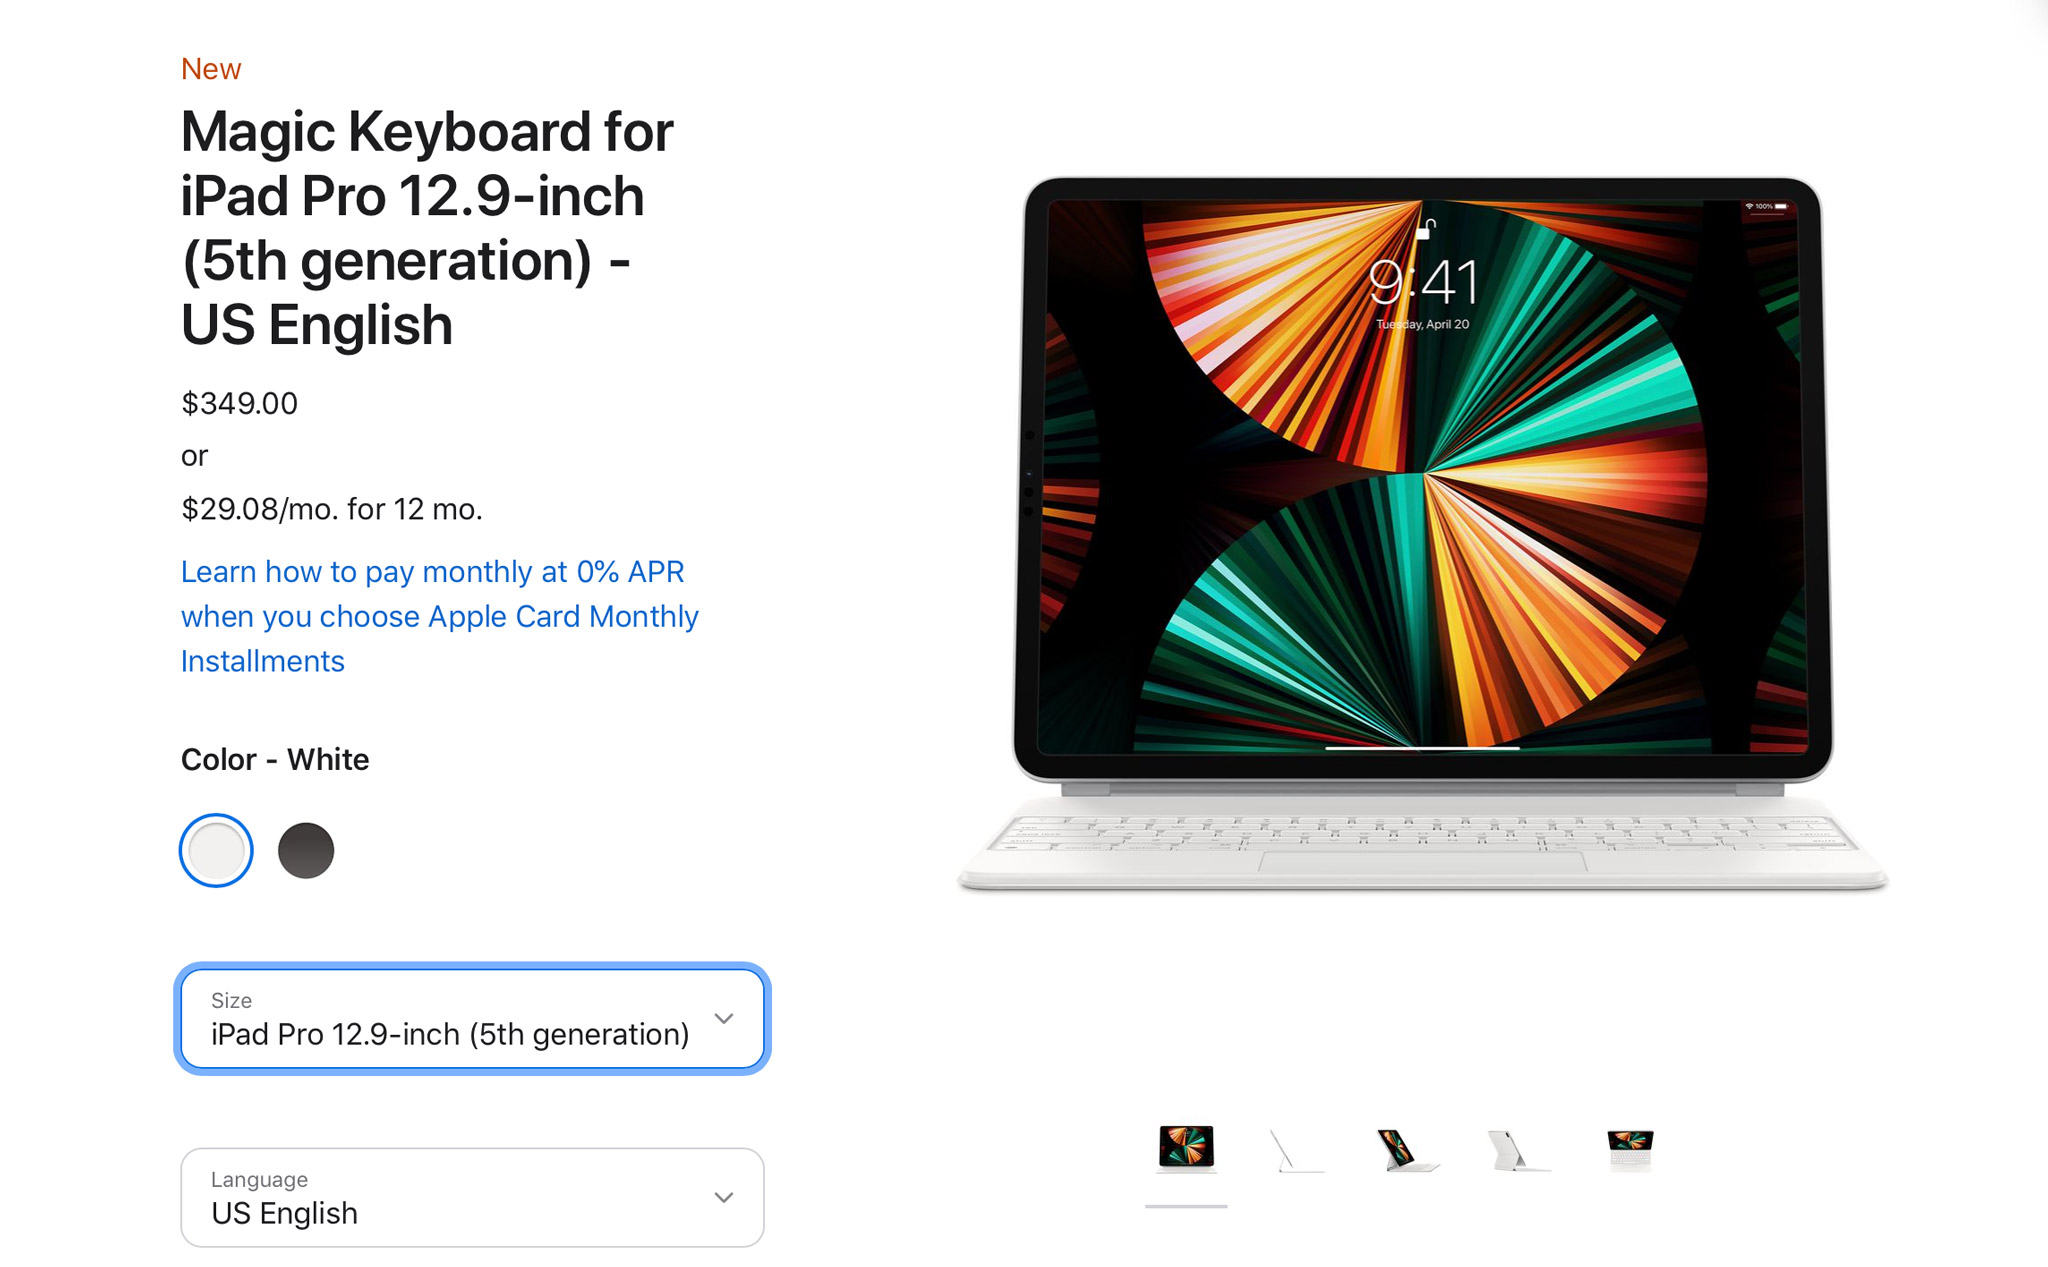 iPad Pro 12,9" mới không thể dùng với Magic Keyboard cũ, lại phải chi $349 để mua mới :D